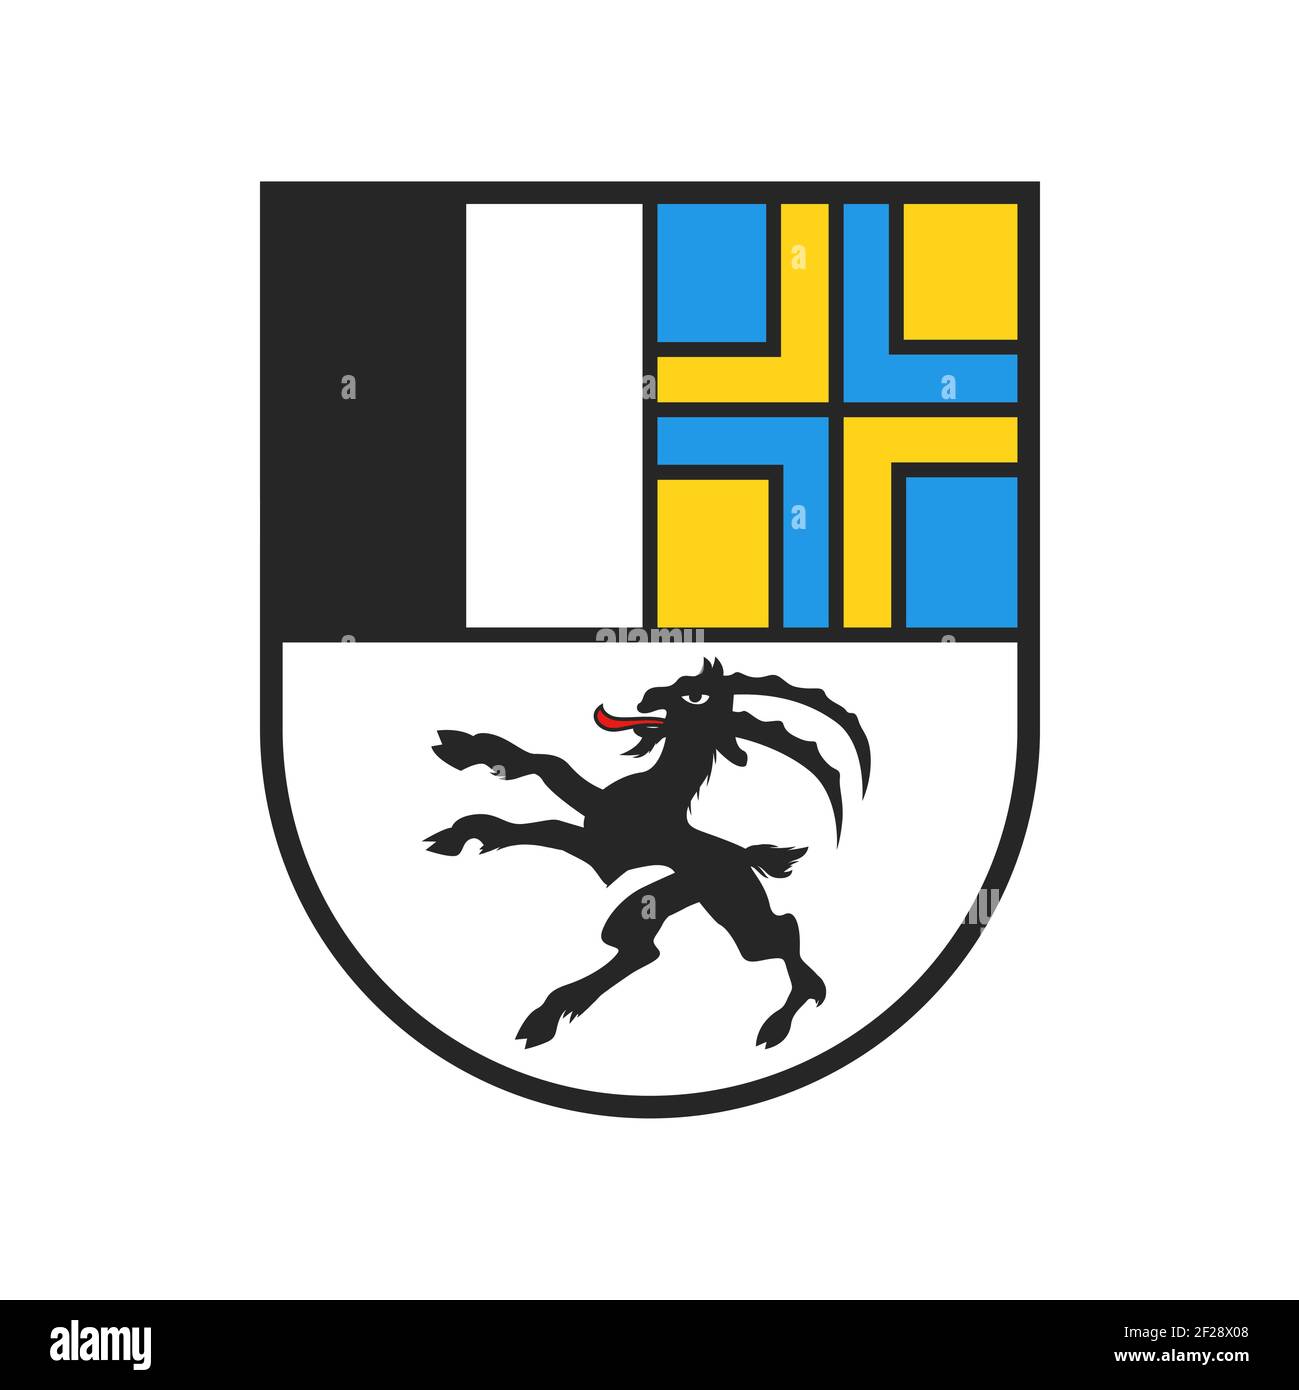 Schweizer Kanton Wappen, Schweiz heraldry Zeichen und Schild Flagge, Vektor. Schweizer Kantonsschild Graubünden oder Graubünden, Schweiz Konföderation RE Stock Vektor